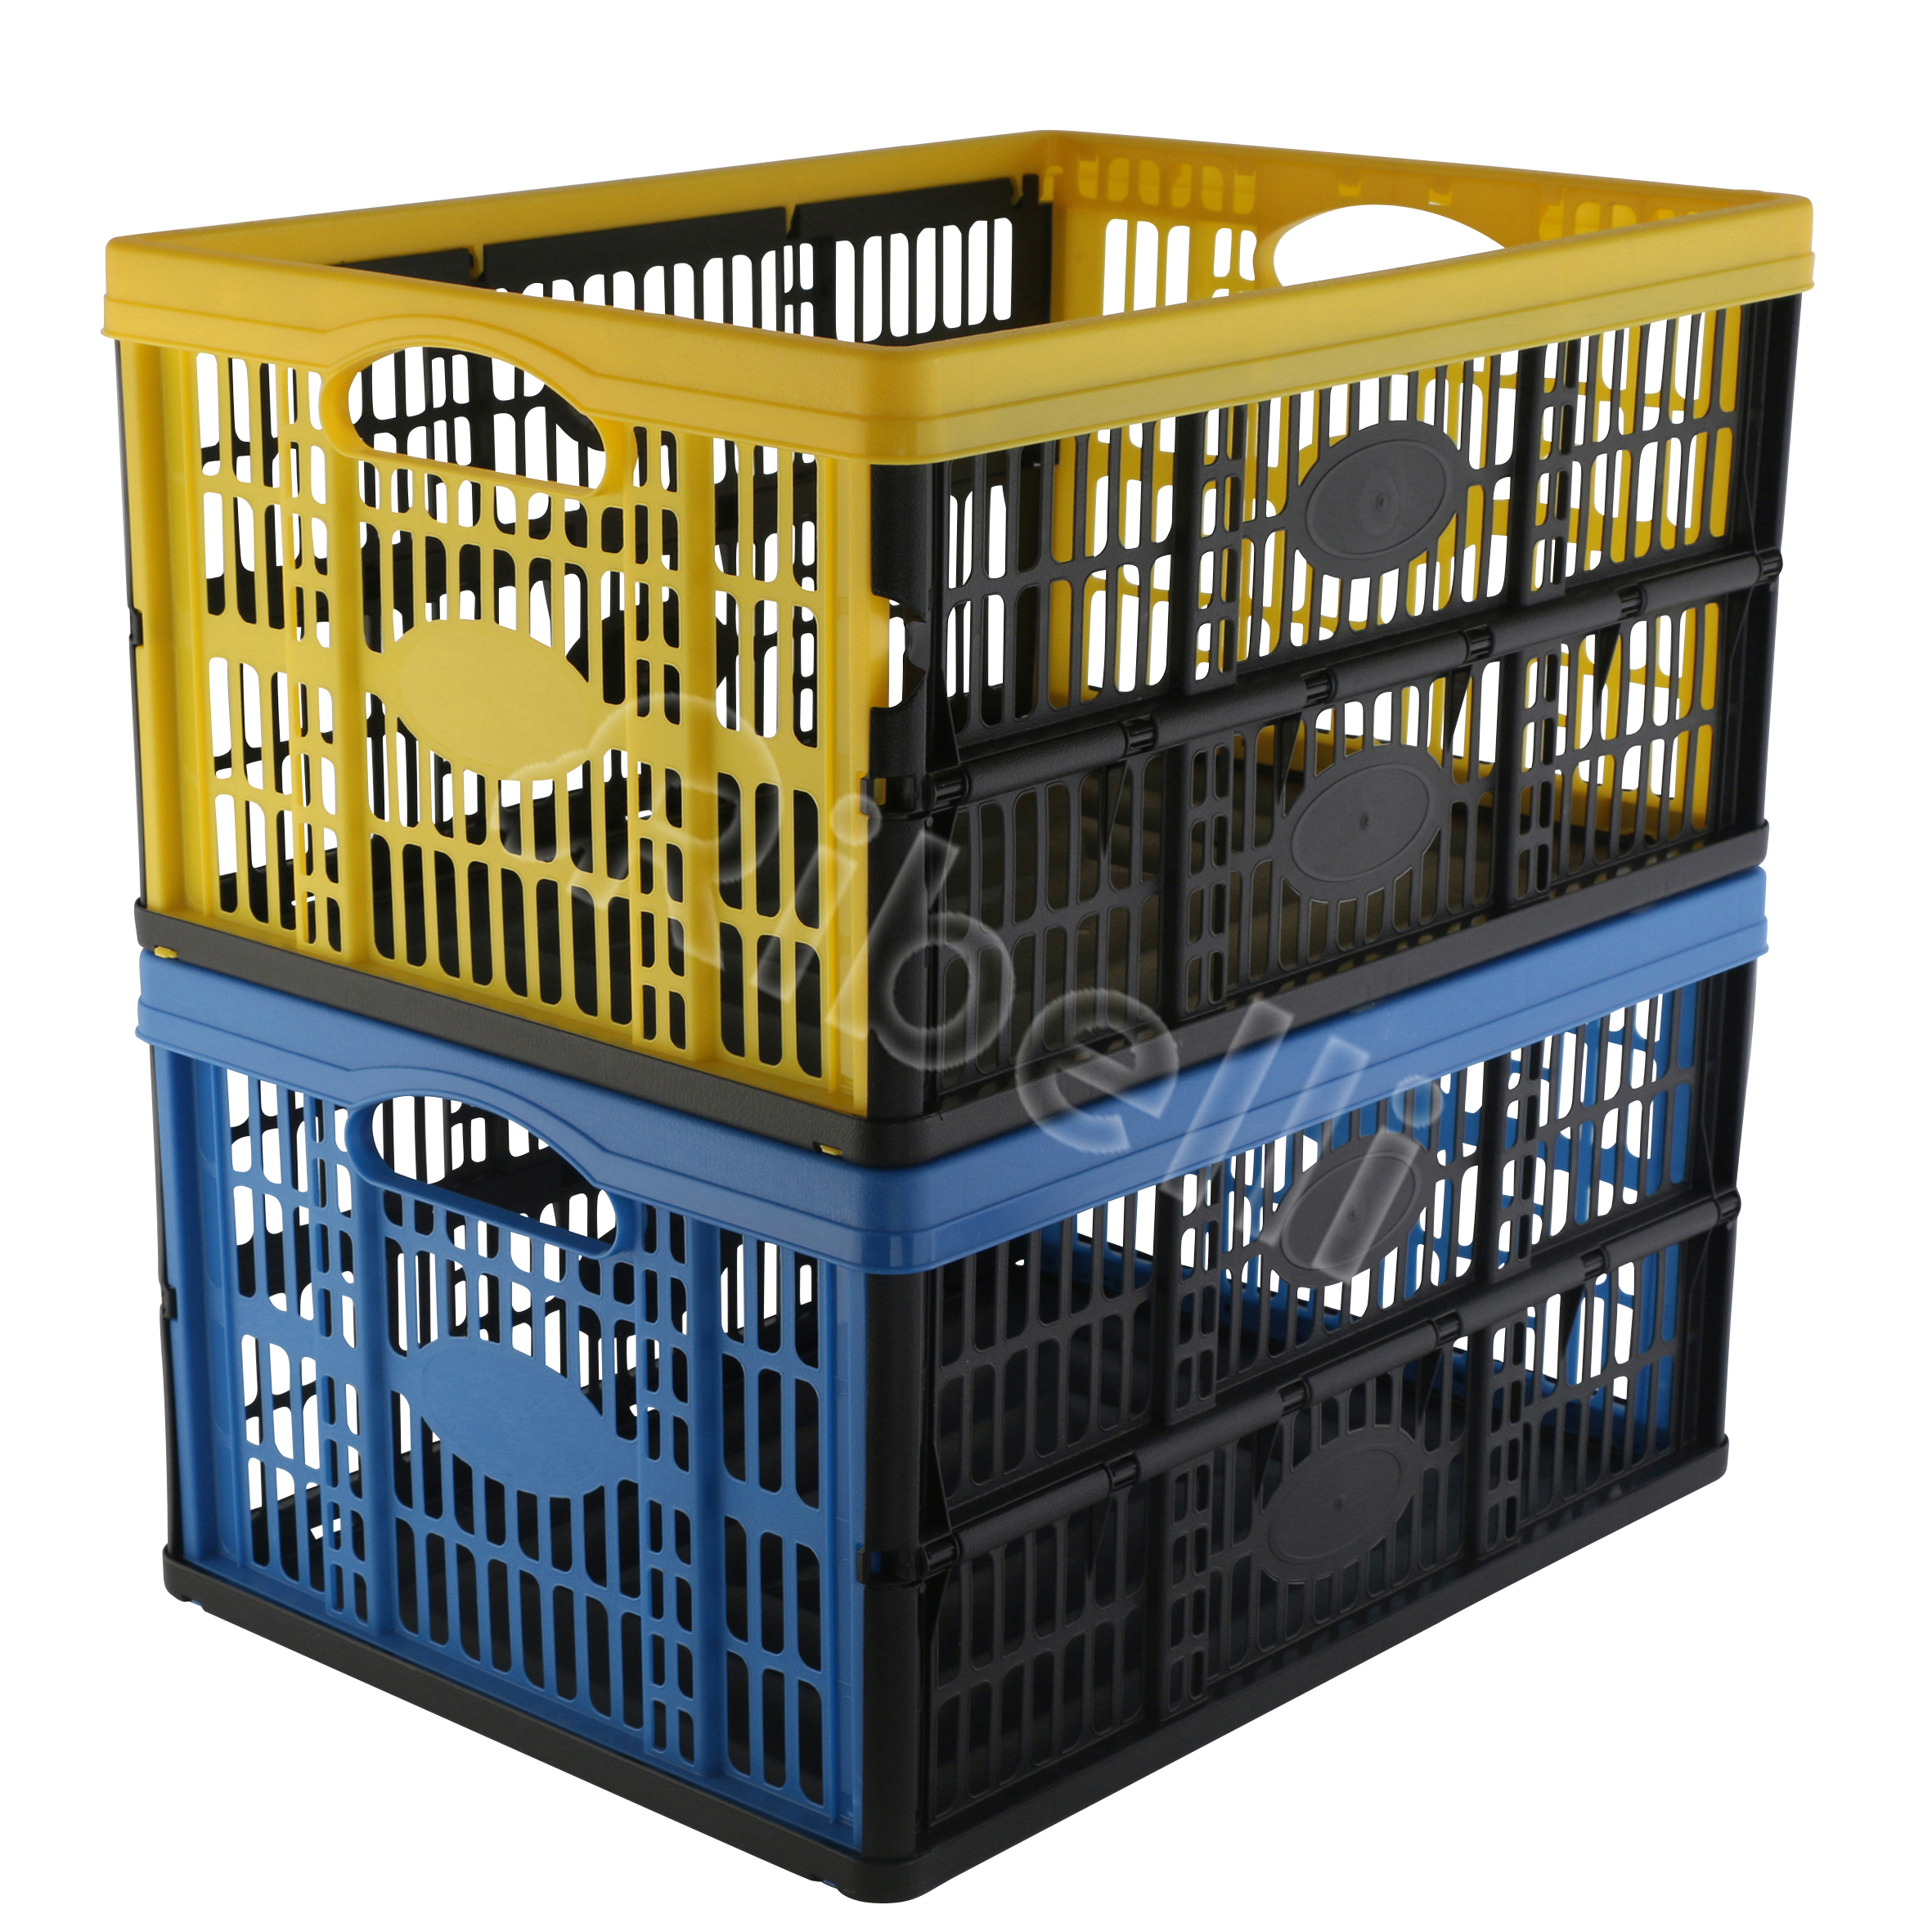 Paket] Klappbox 32L versch. Farben Transportbox Einkaufsbox Einkaufskorb  Aufbewahrung